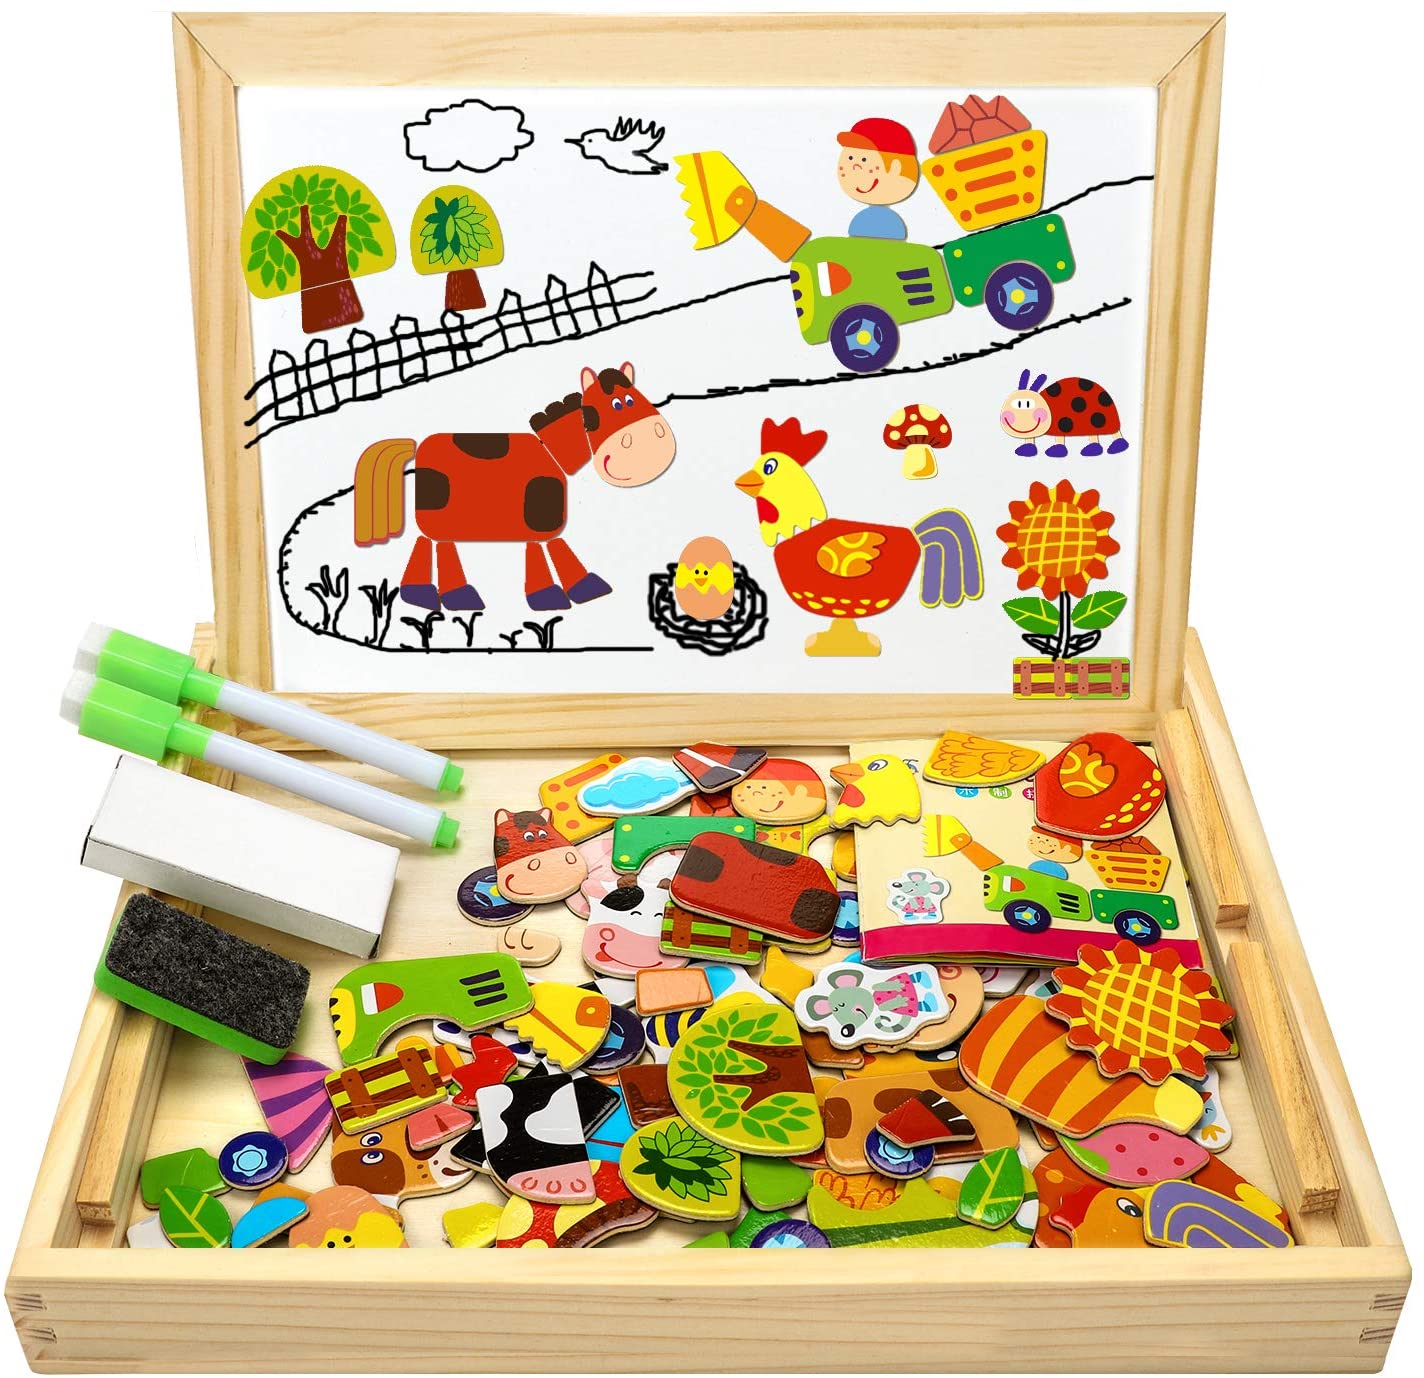 Kinder Steckpuzzel Motorik Lern Spielzeug Magnets Holz Tafel Stift Kreiden Babys 